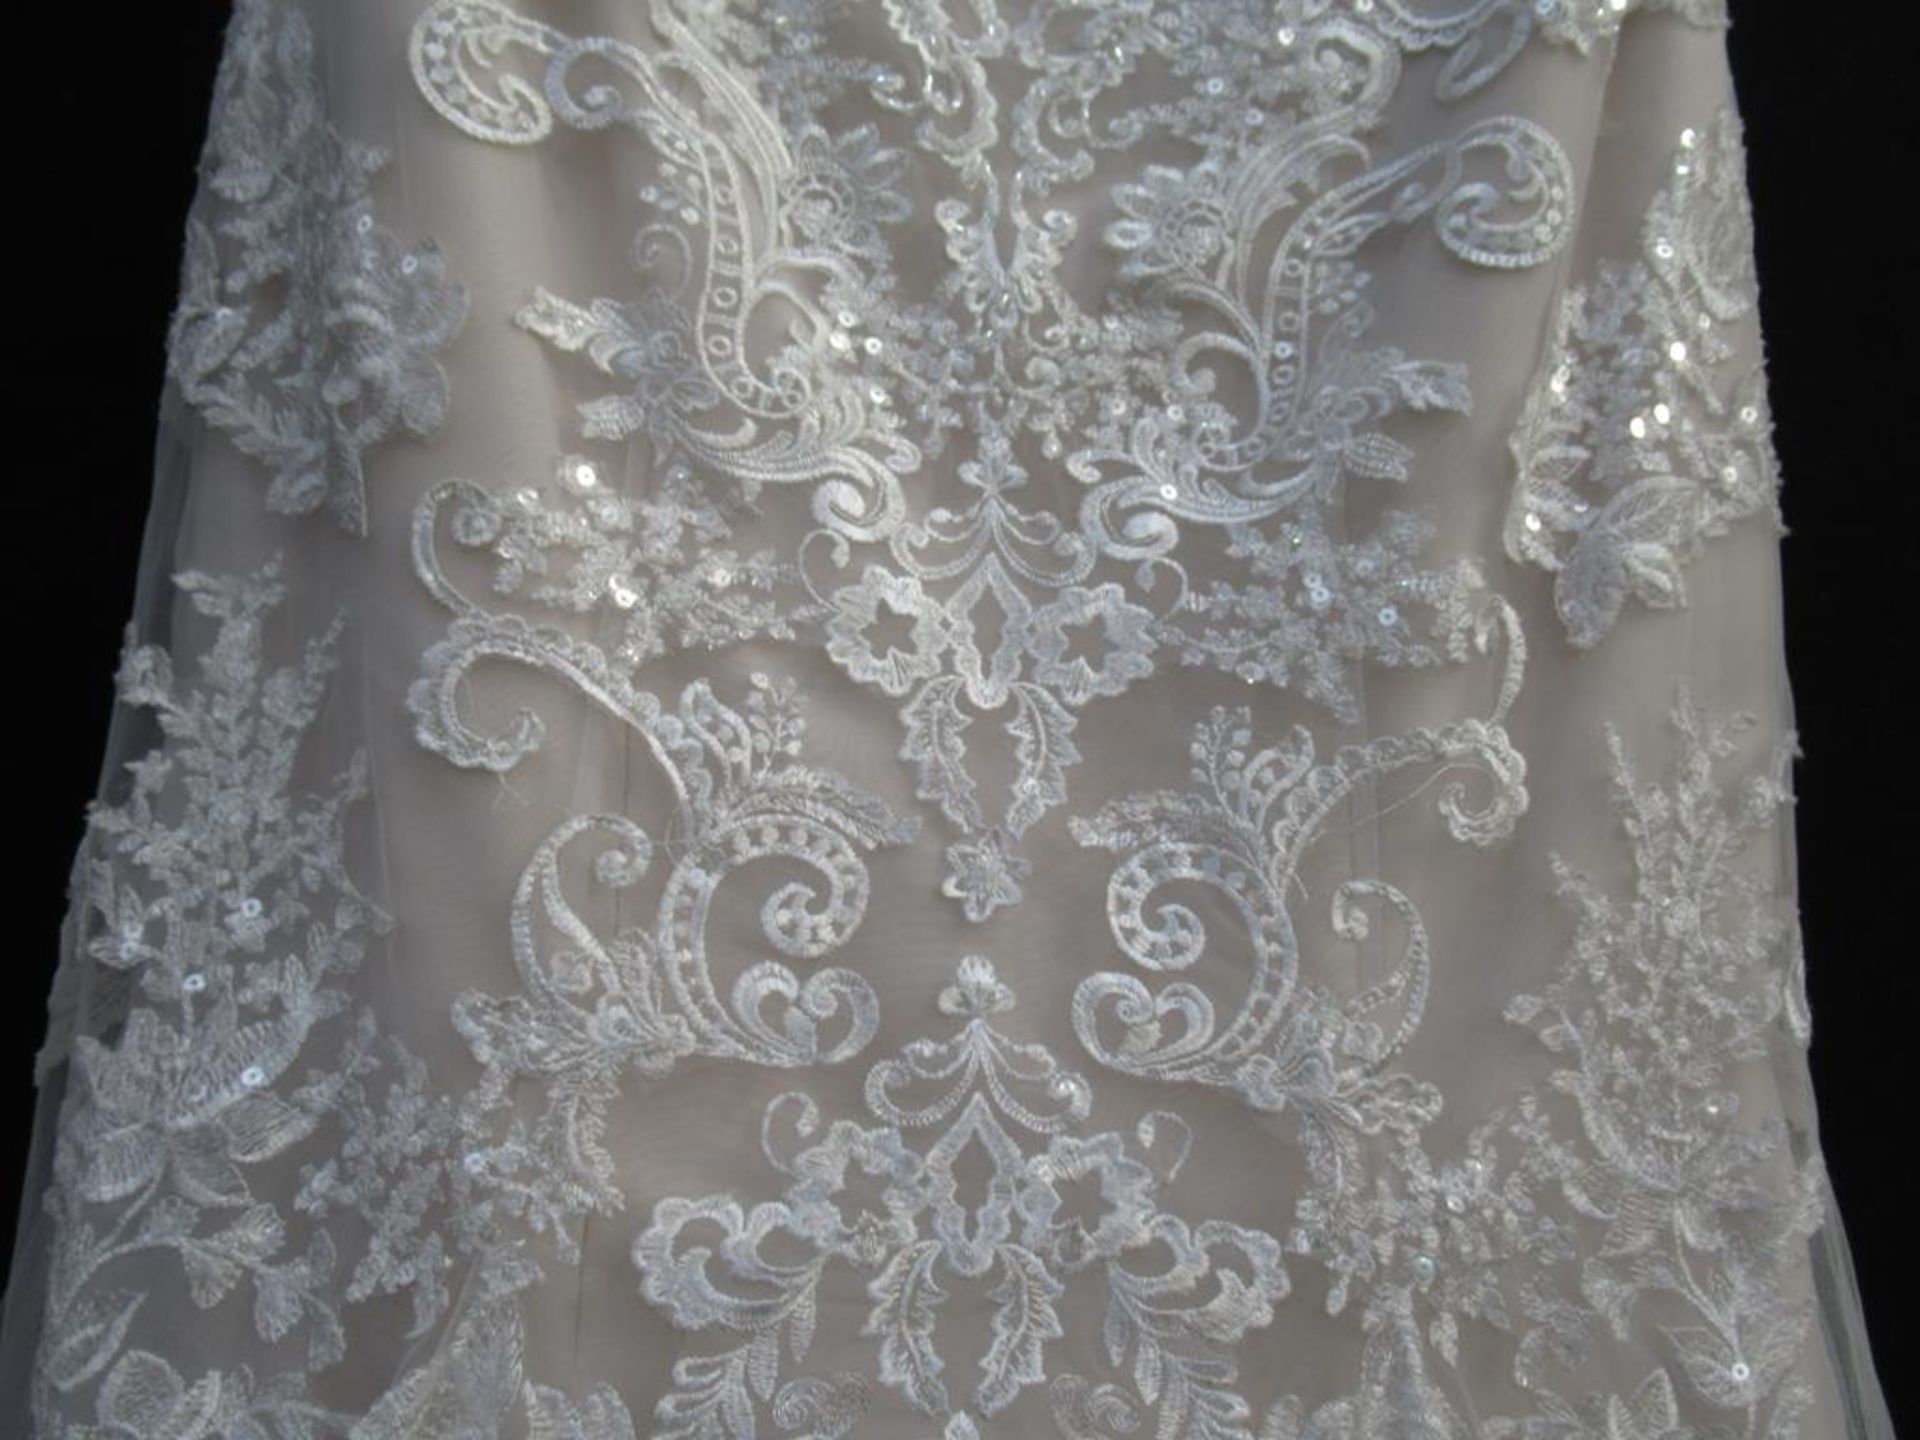 Stella York wedding dress - Bild 4 aus 13